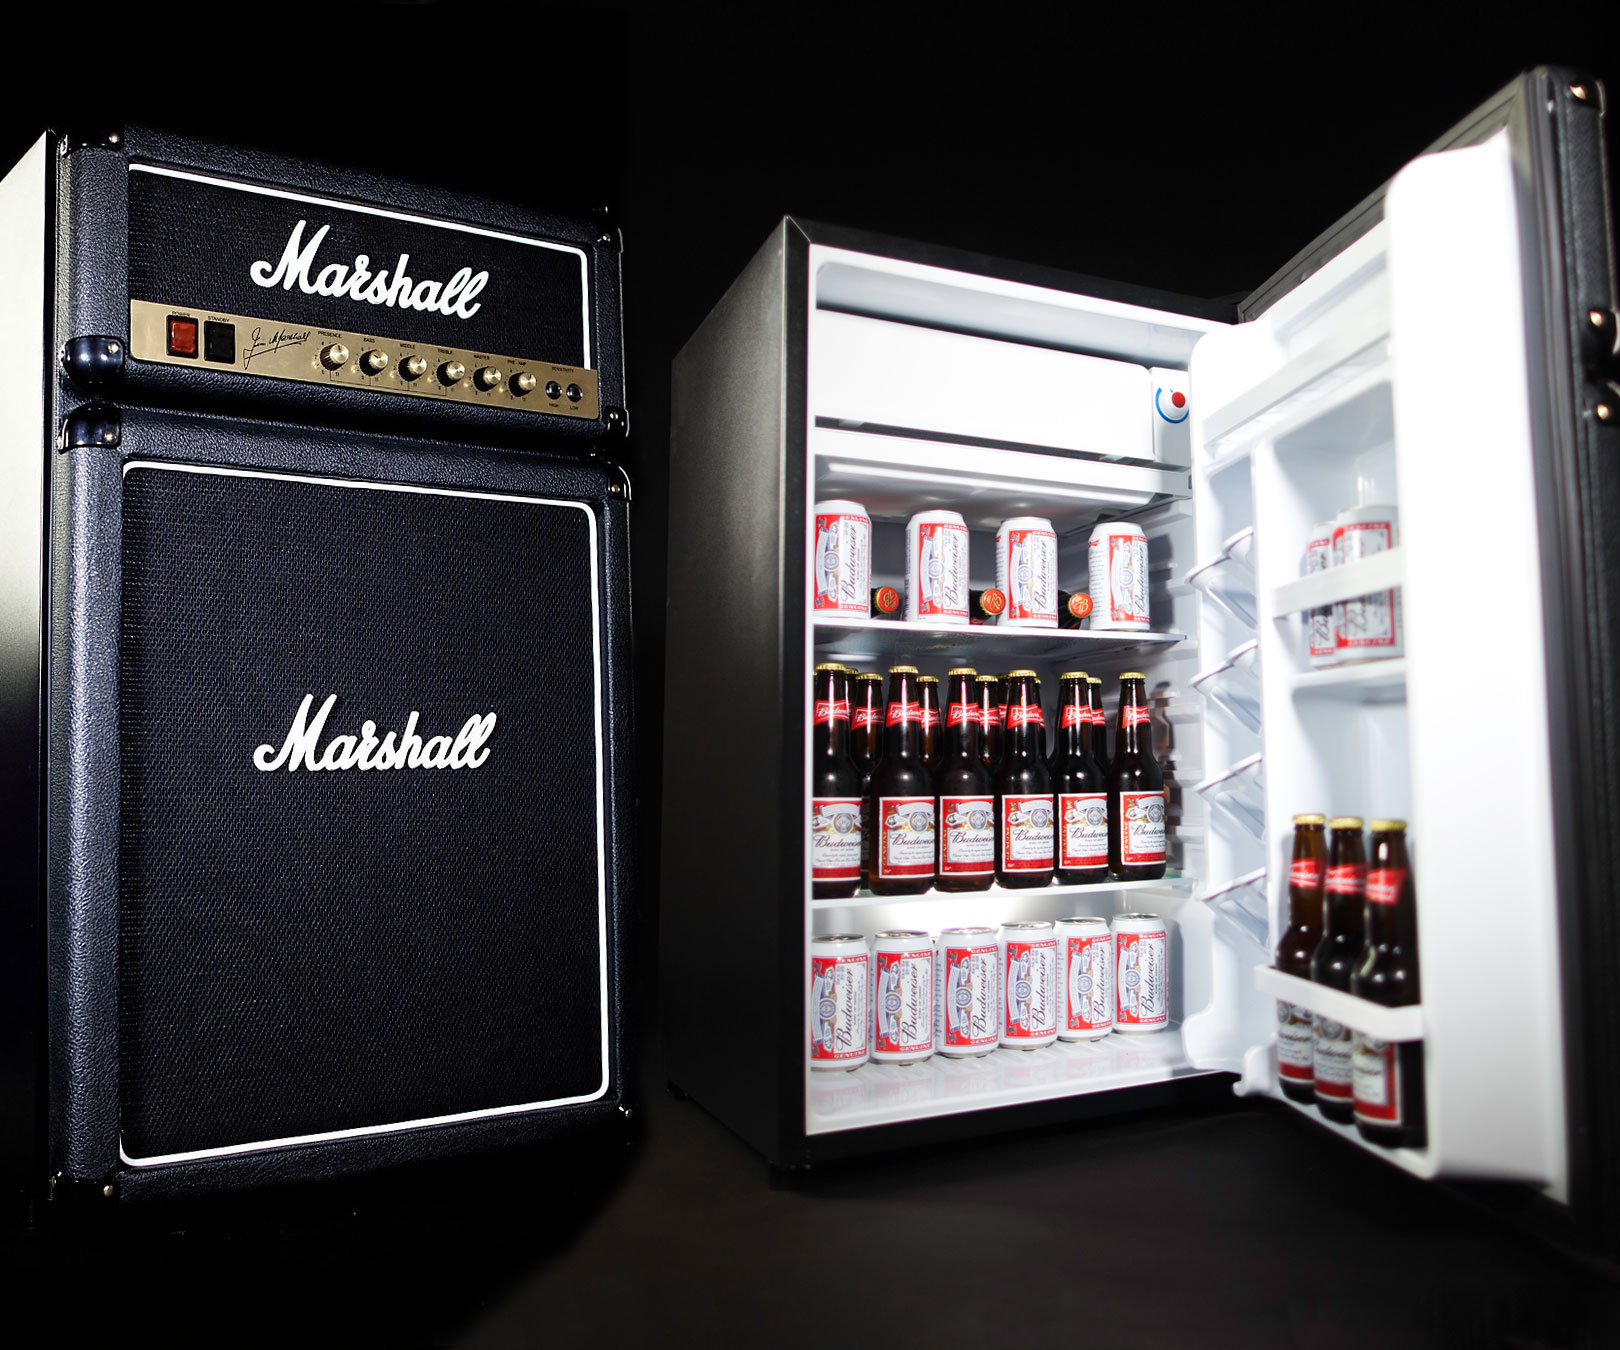 Marshall fridge